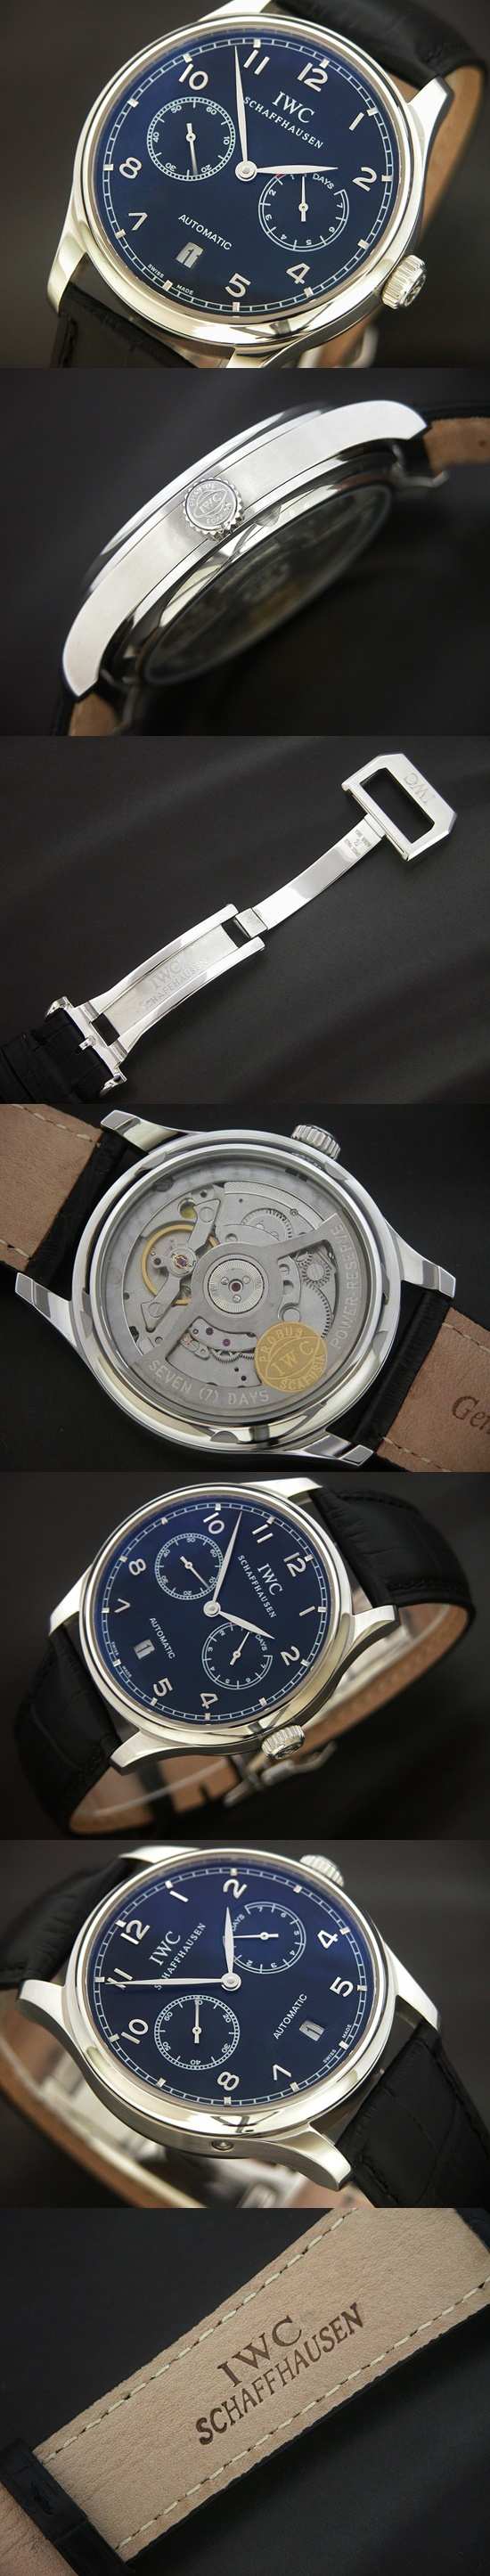 おしゃれなブランド時計がIWC-ポルトギーゼ-IWC-IW500109-am-男性用を提供します.